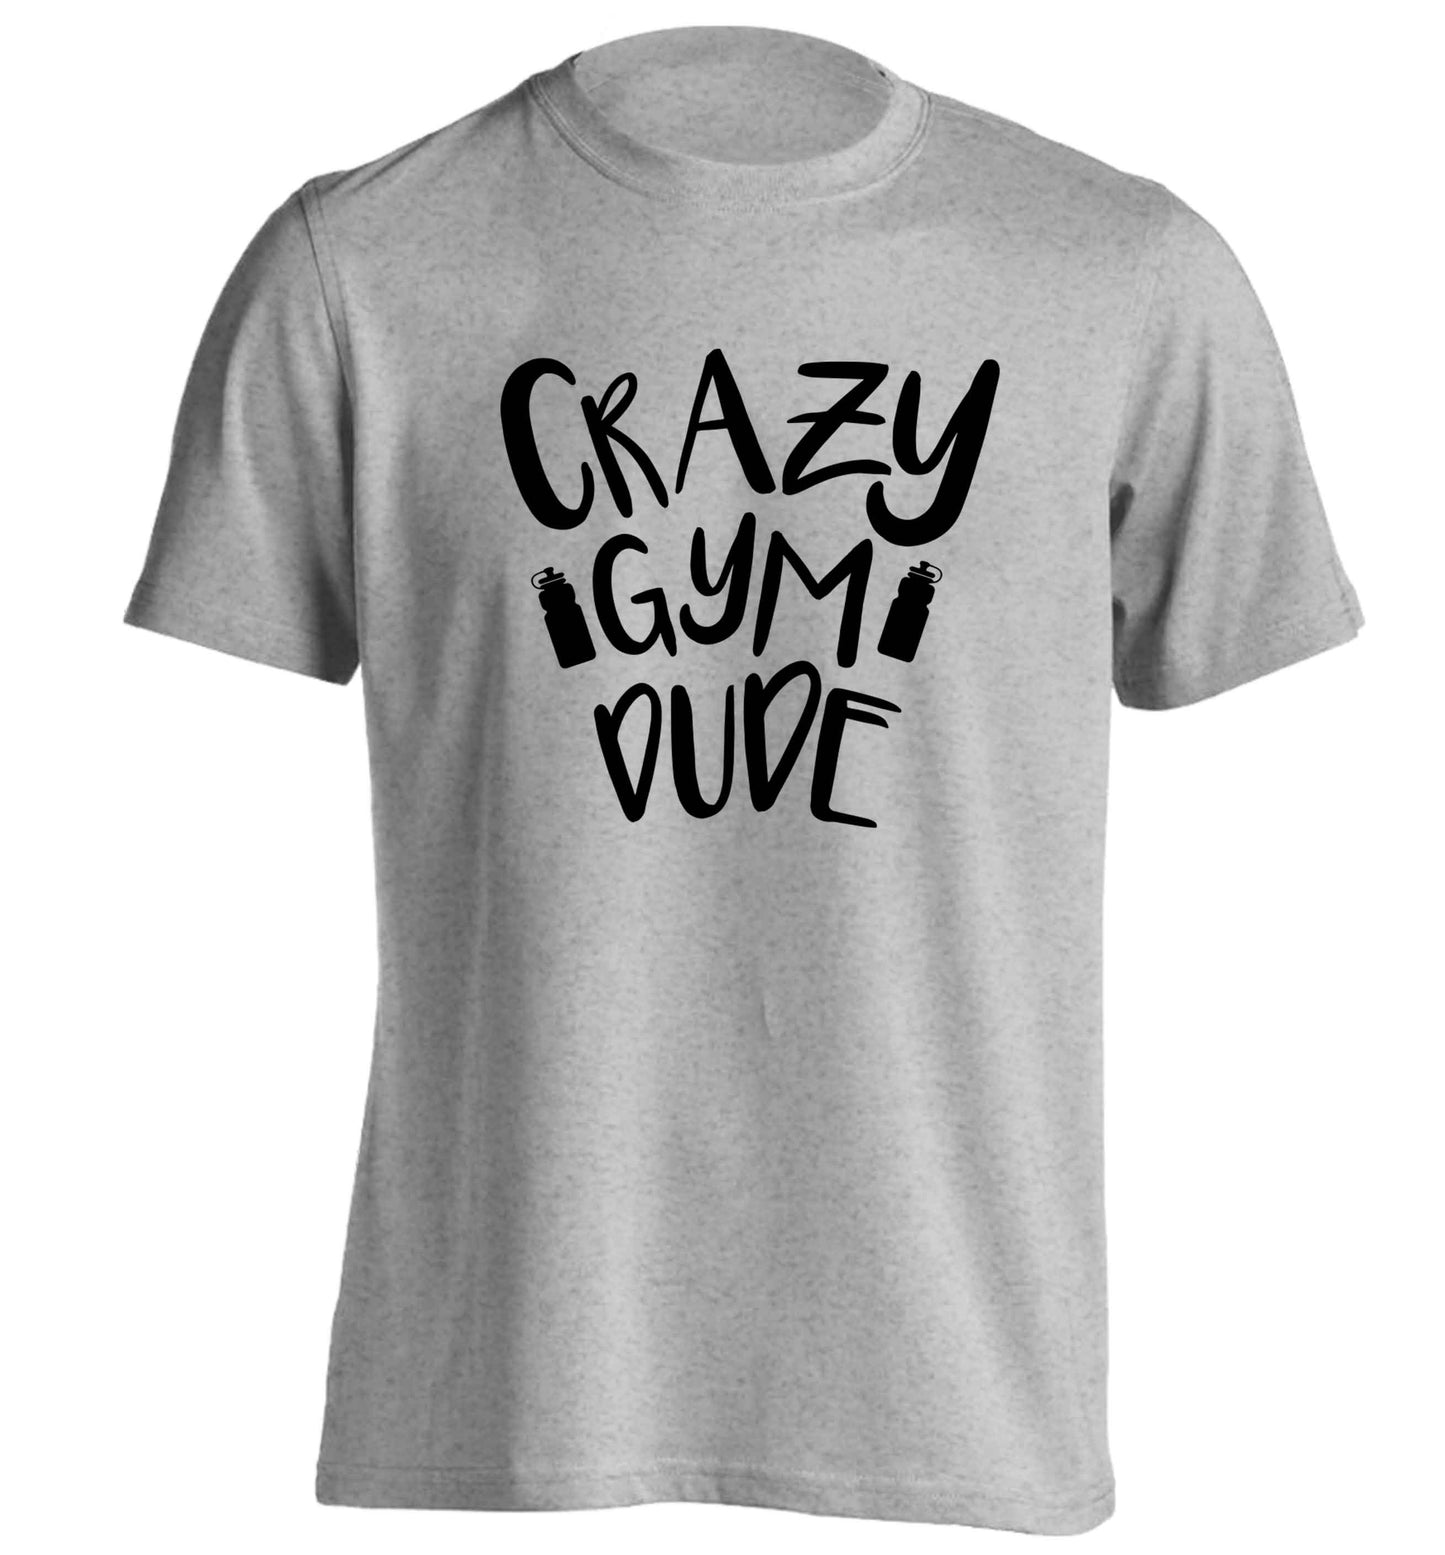 Crazy gym dude adults unisex grey Tshirt 2XL